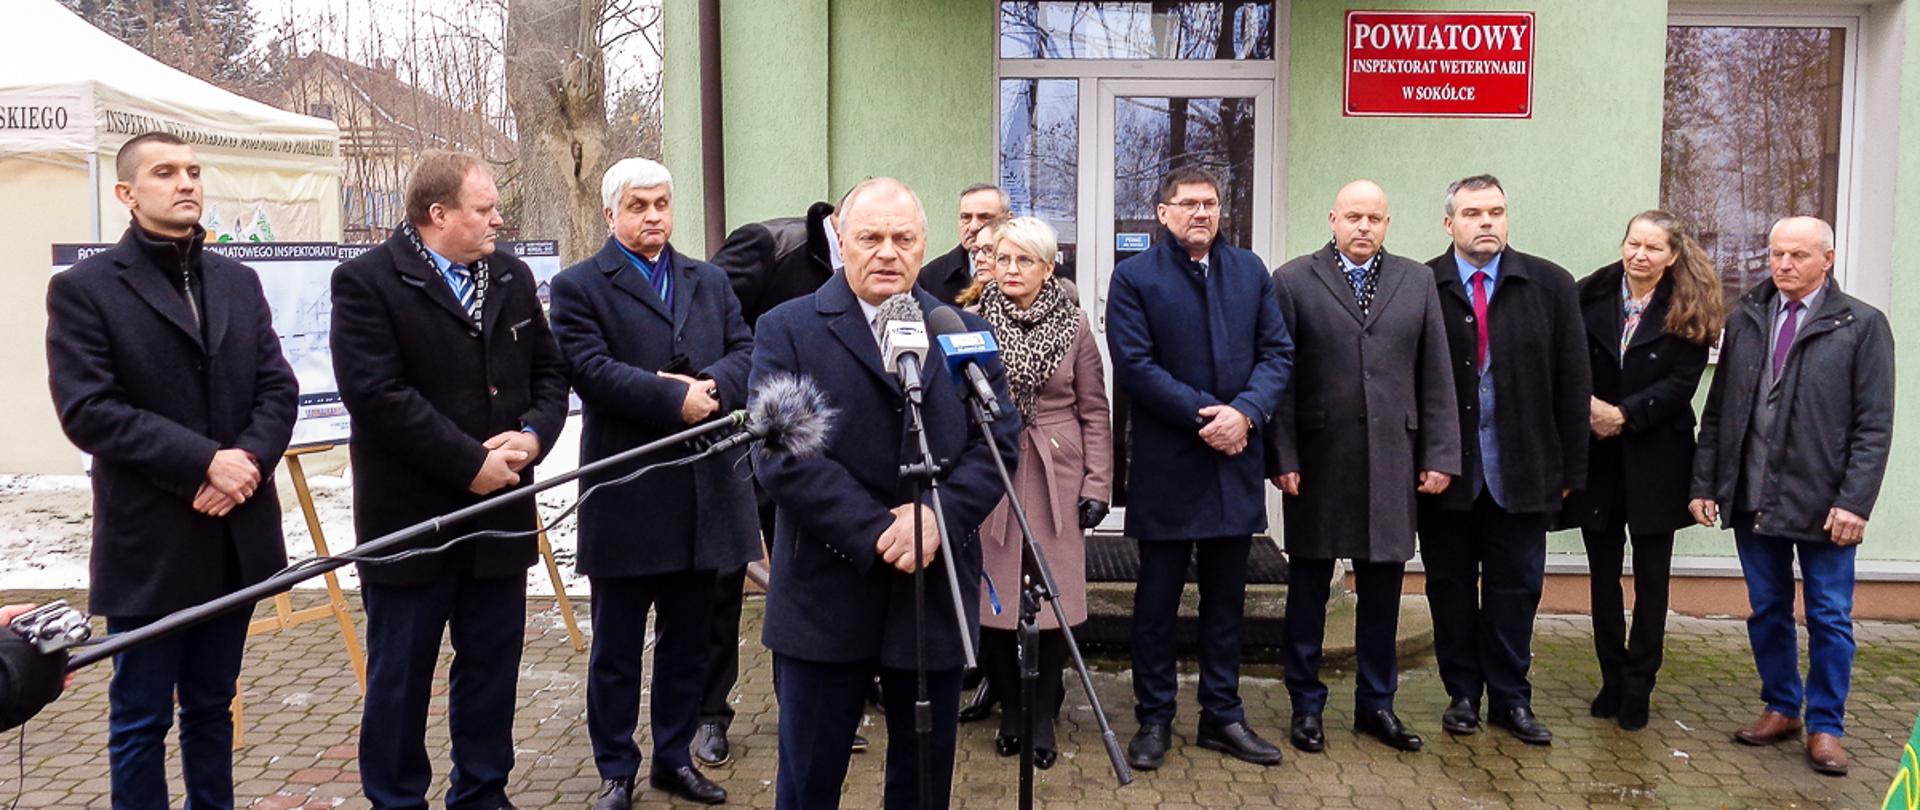 sekretarz stanu Lech Kołakowski podczas uroczystego przedstawienia planu rozbudowy Powiatowego Inspektoratu Weterynarii w Sokółce